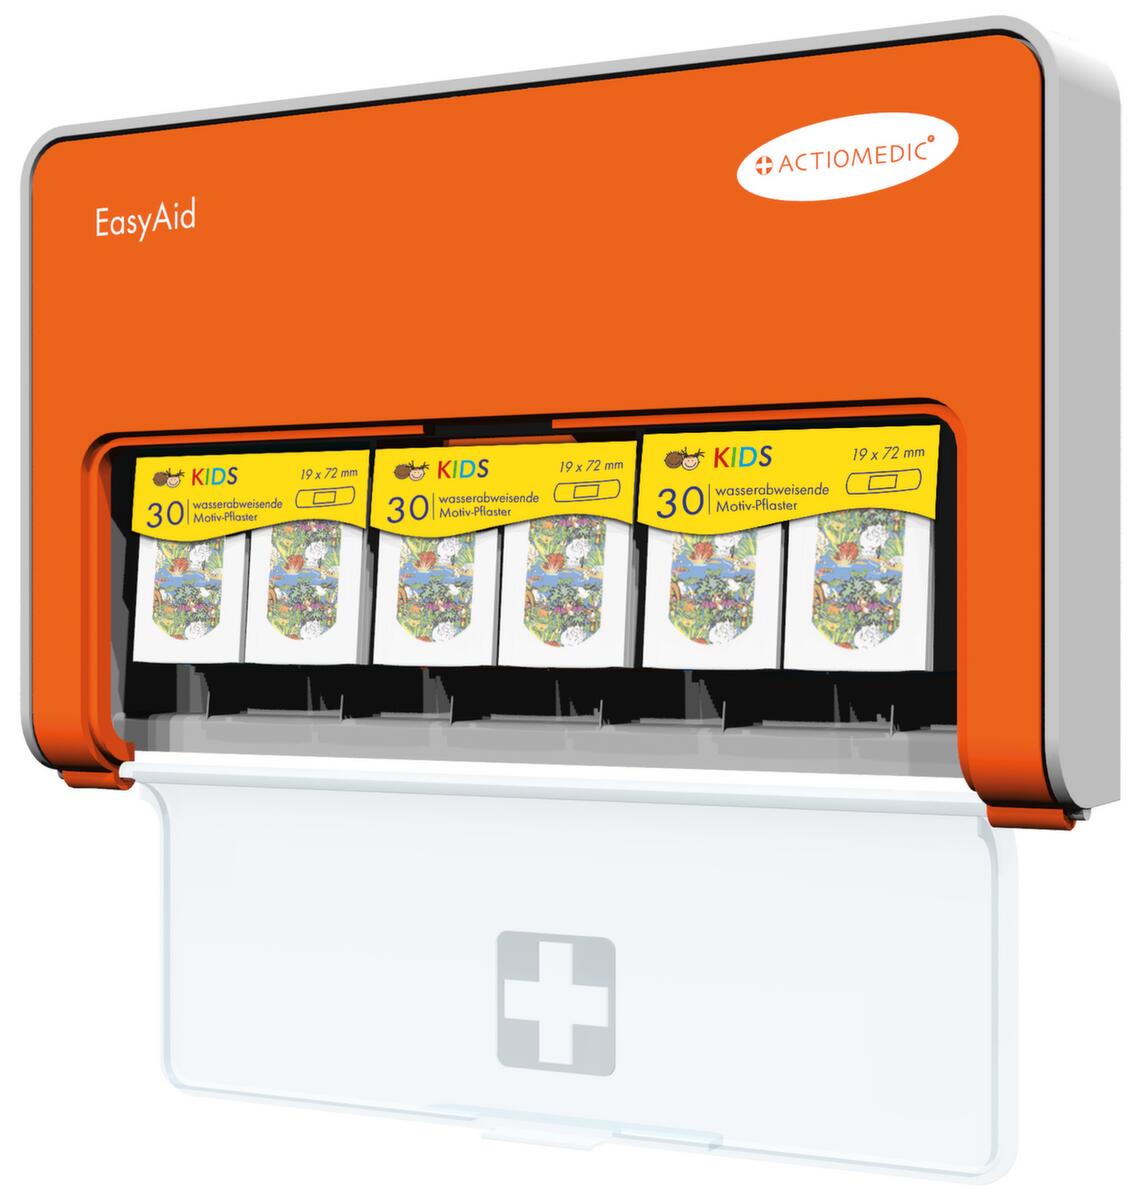 Pleisterautomaat EasyAid KIDS met 90 pleisters  ZOOM